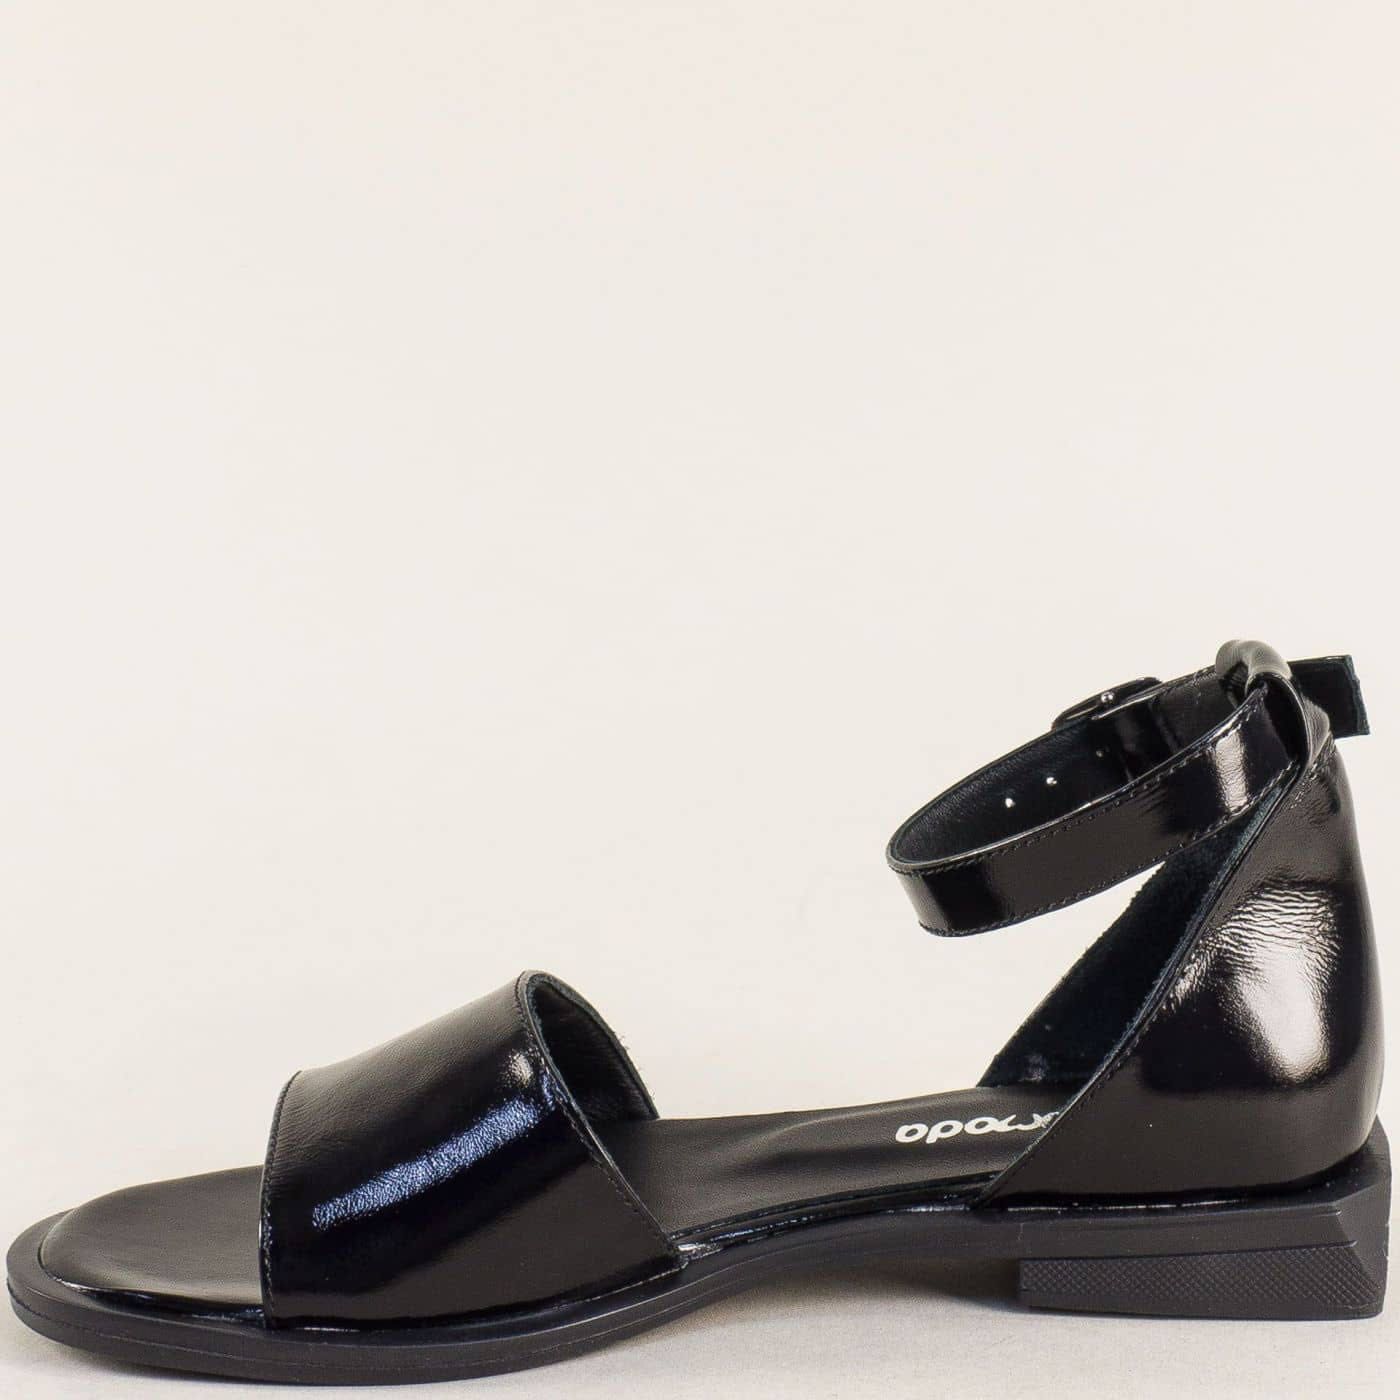 Модерни дамски сандали в черен естествен лак. Топ цена 89.90лв.